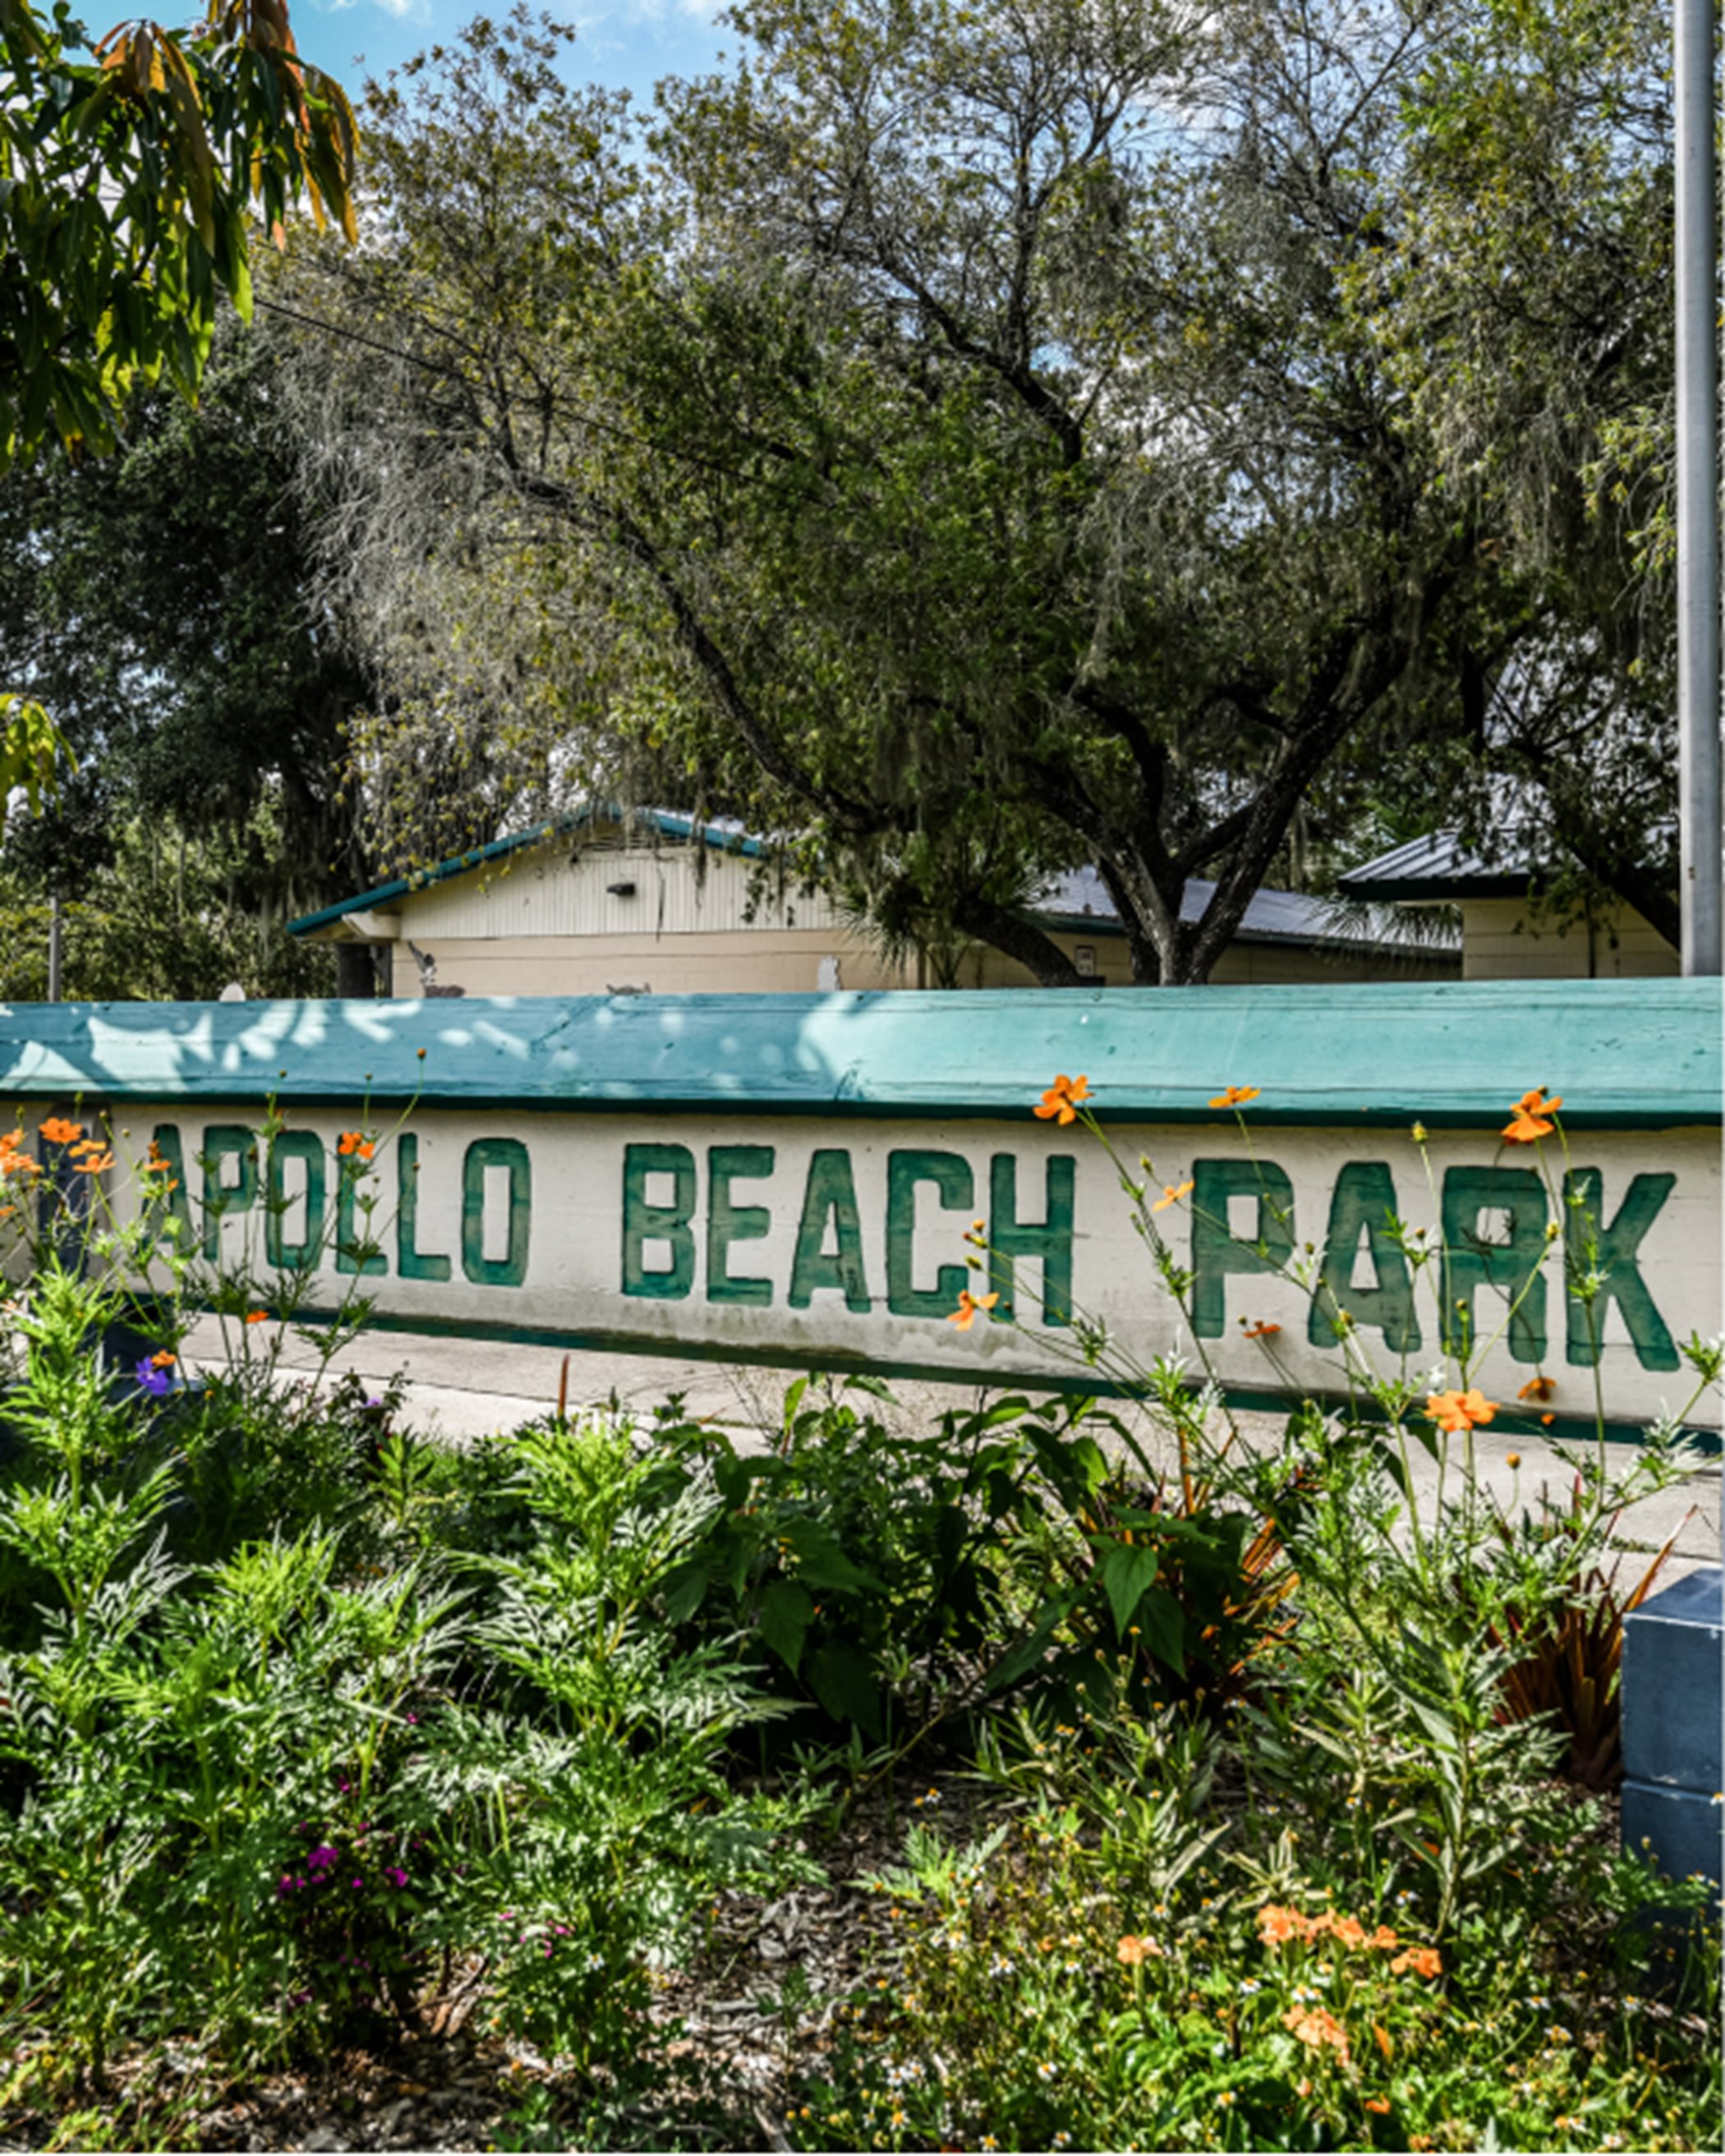 Apollo Beach Park